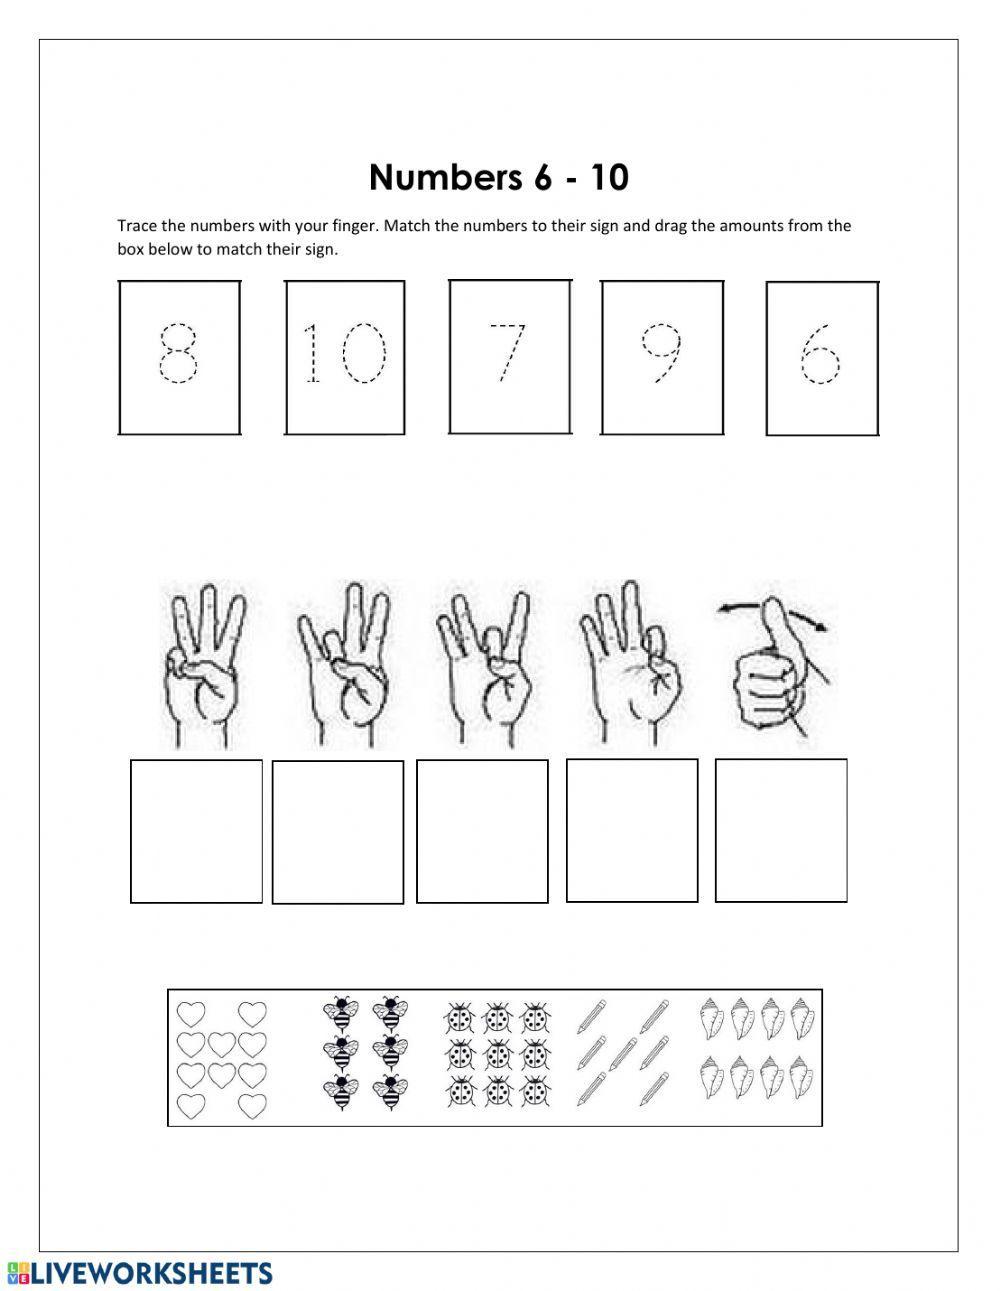 Numbers 6-10 ASL